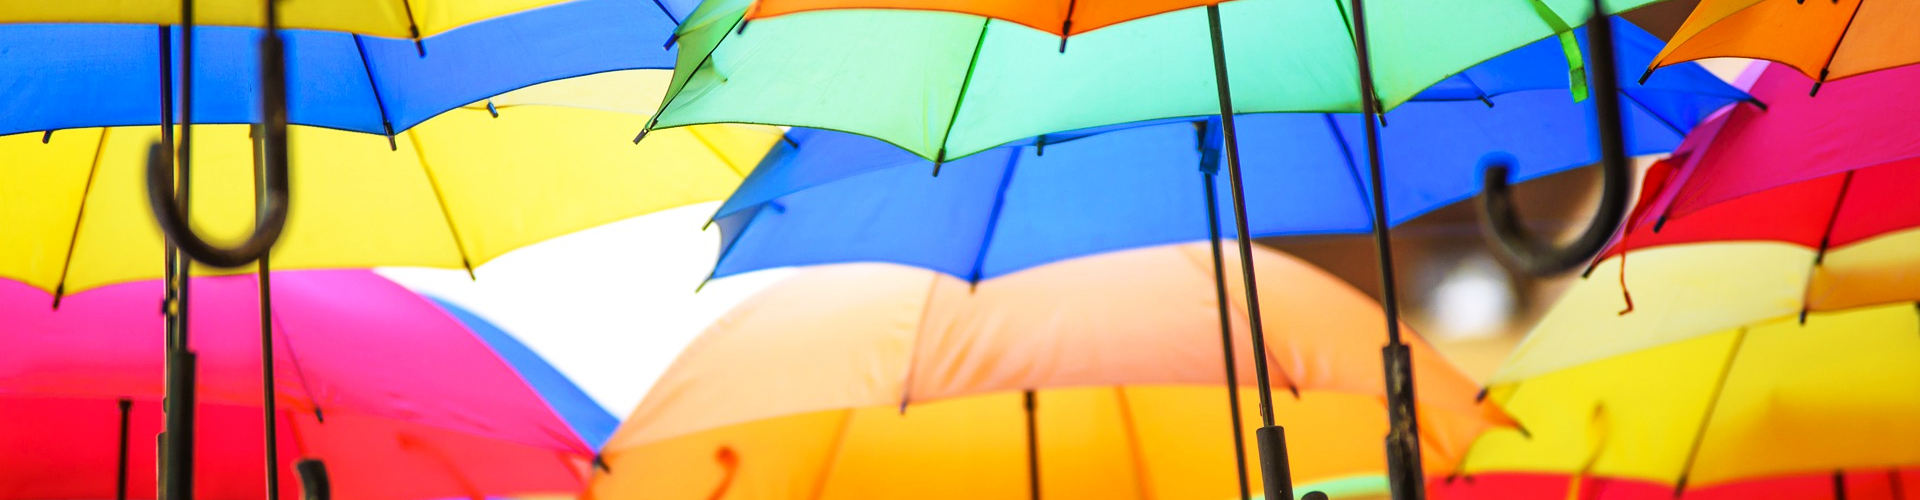 Viele bunte Regenschirme, die die Stimmung erhellen und schlechte Laune abschirmen